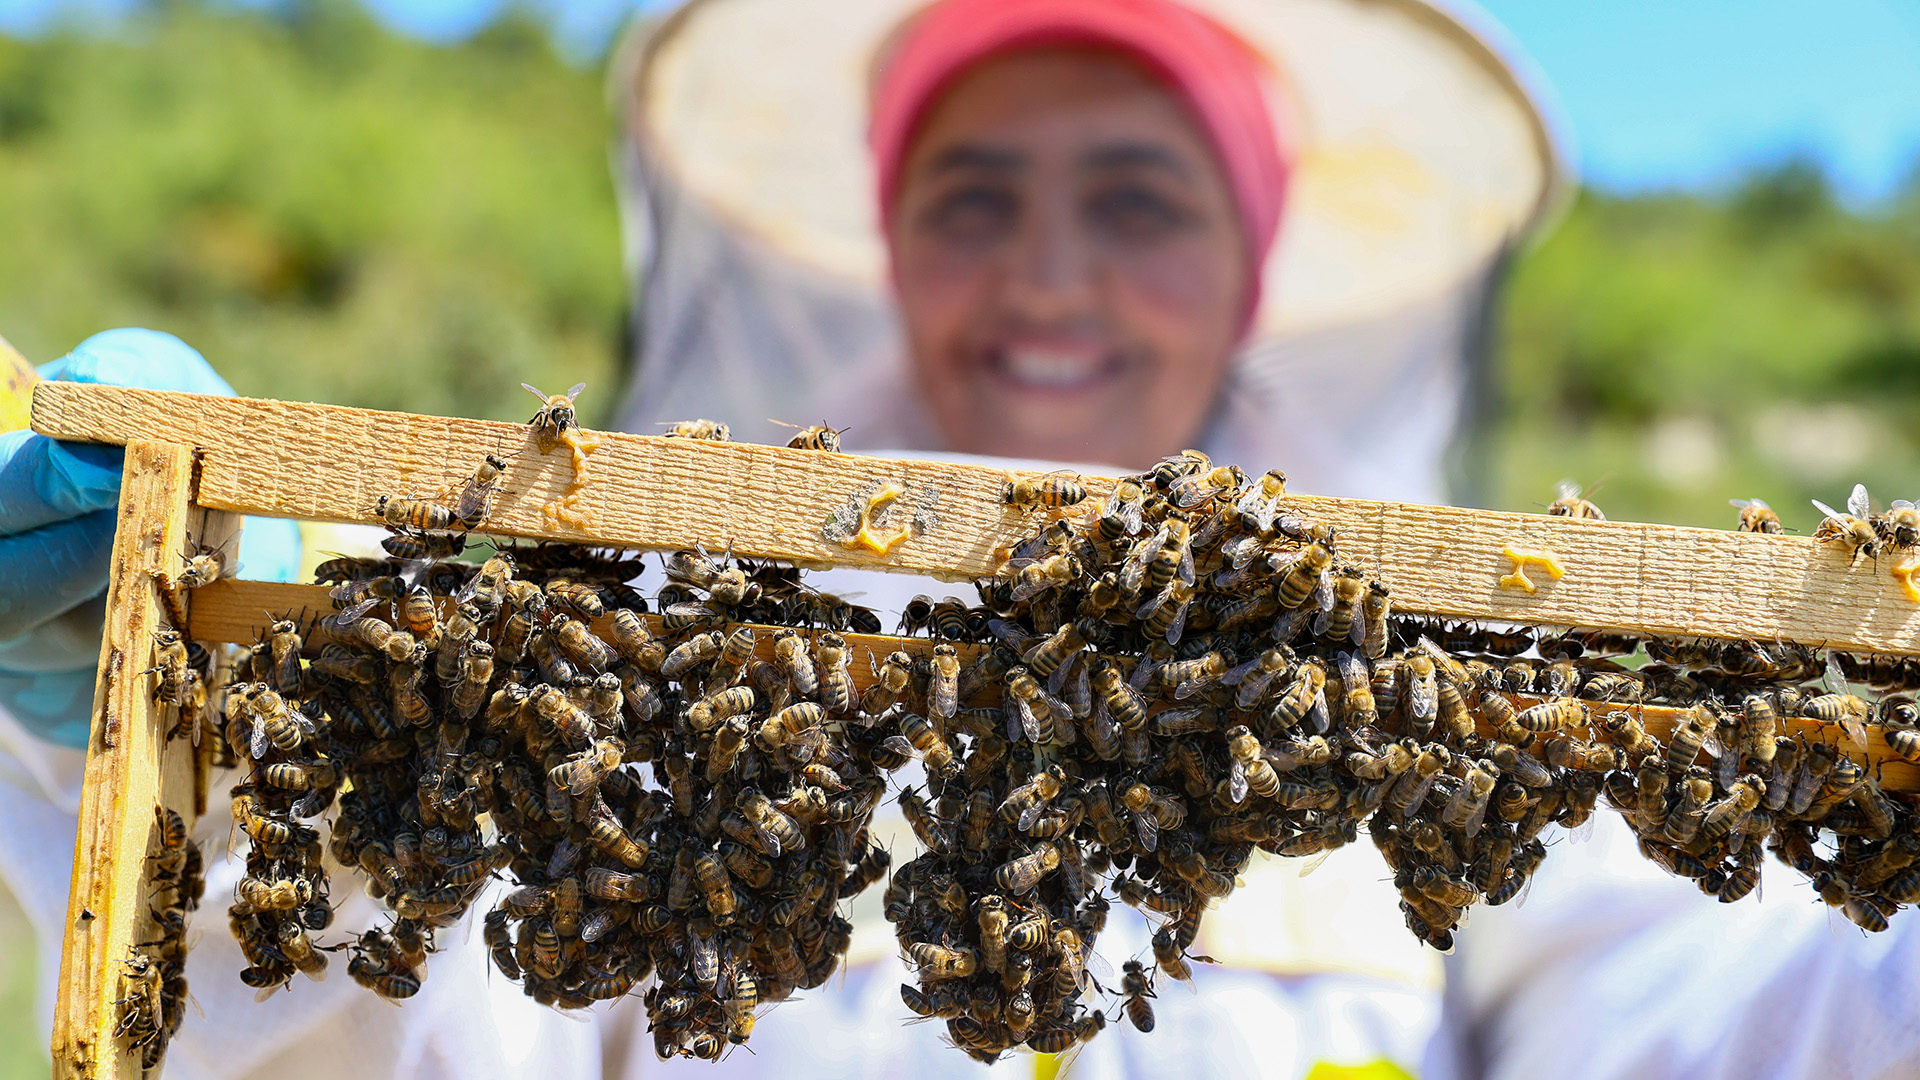 Kadın girişimci yetiştirdiği kraliçe arılarla, bal üretimine katkı sağlıyor